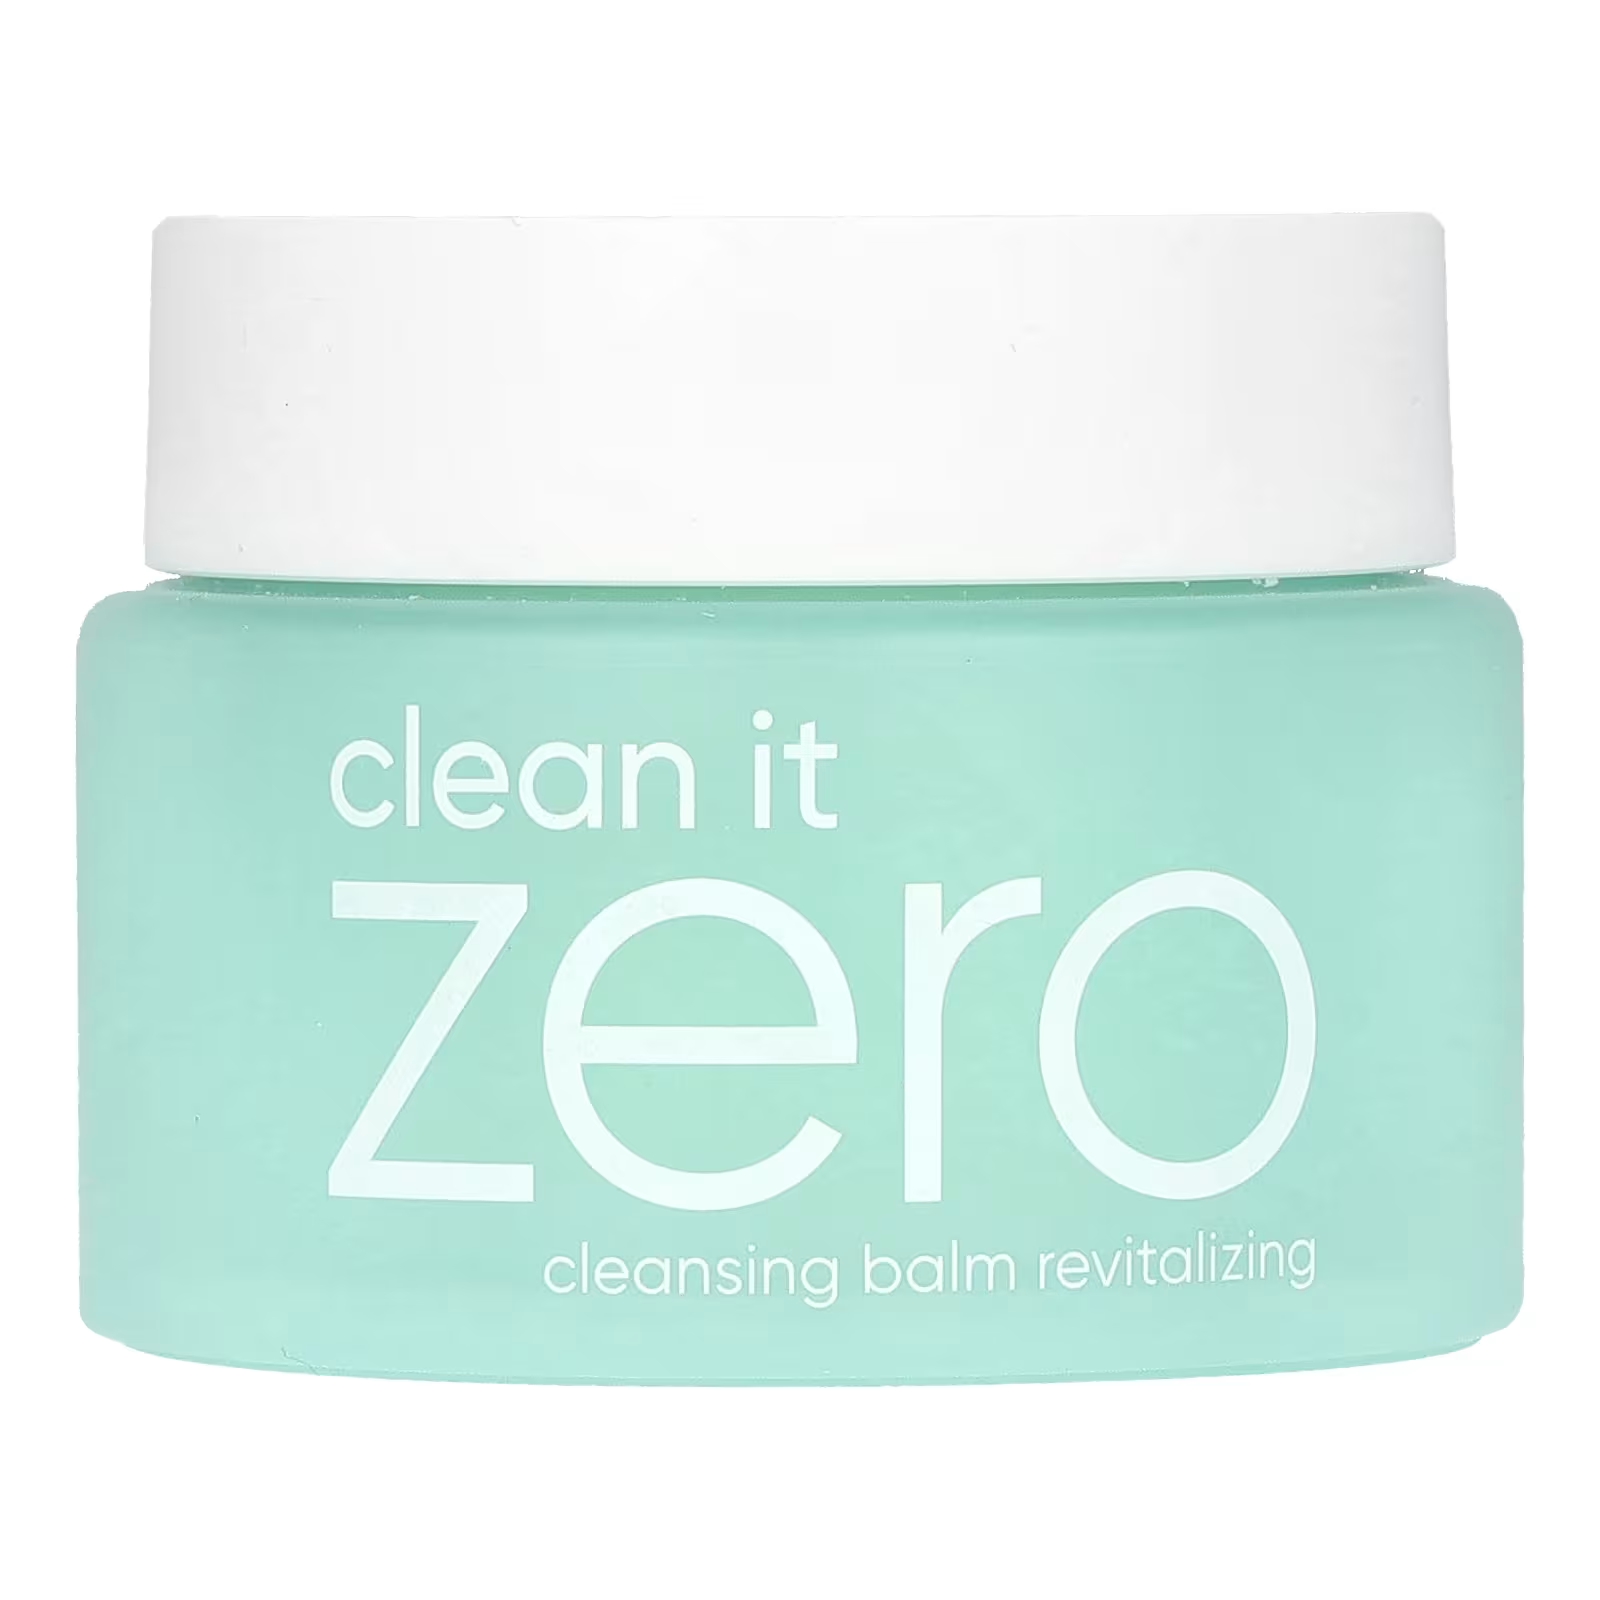 Очищающий бальзам Banila Co Clean It Zero 3-в-1, 100 мл очищающий крем для лица с экстрактом клубники premium clean